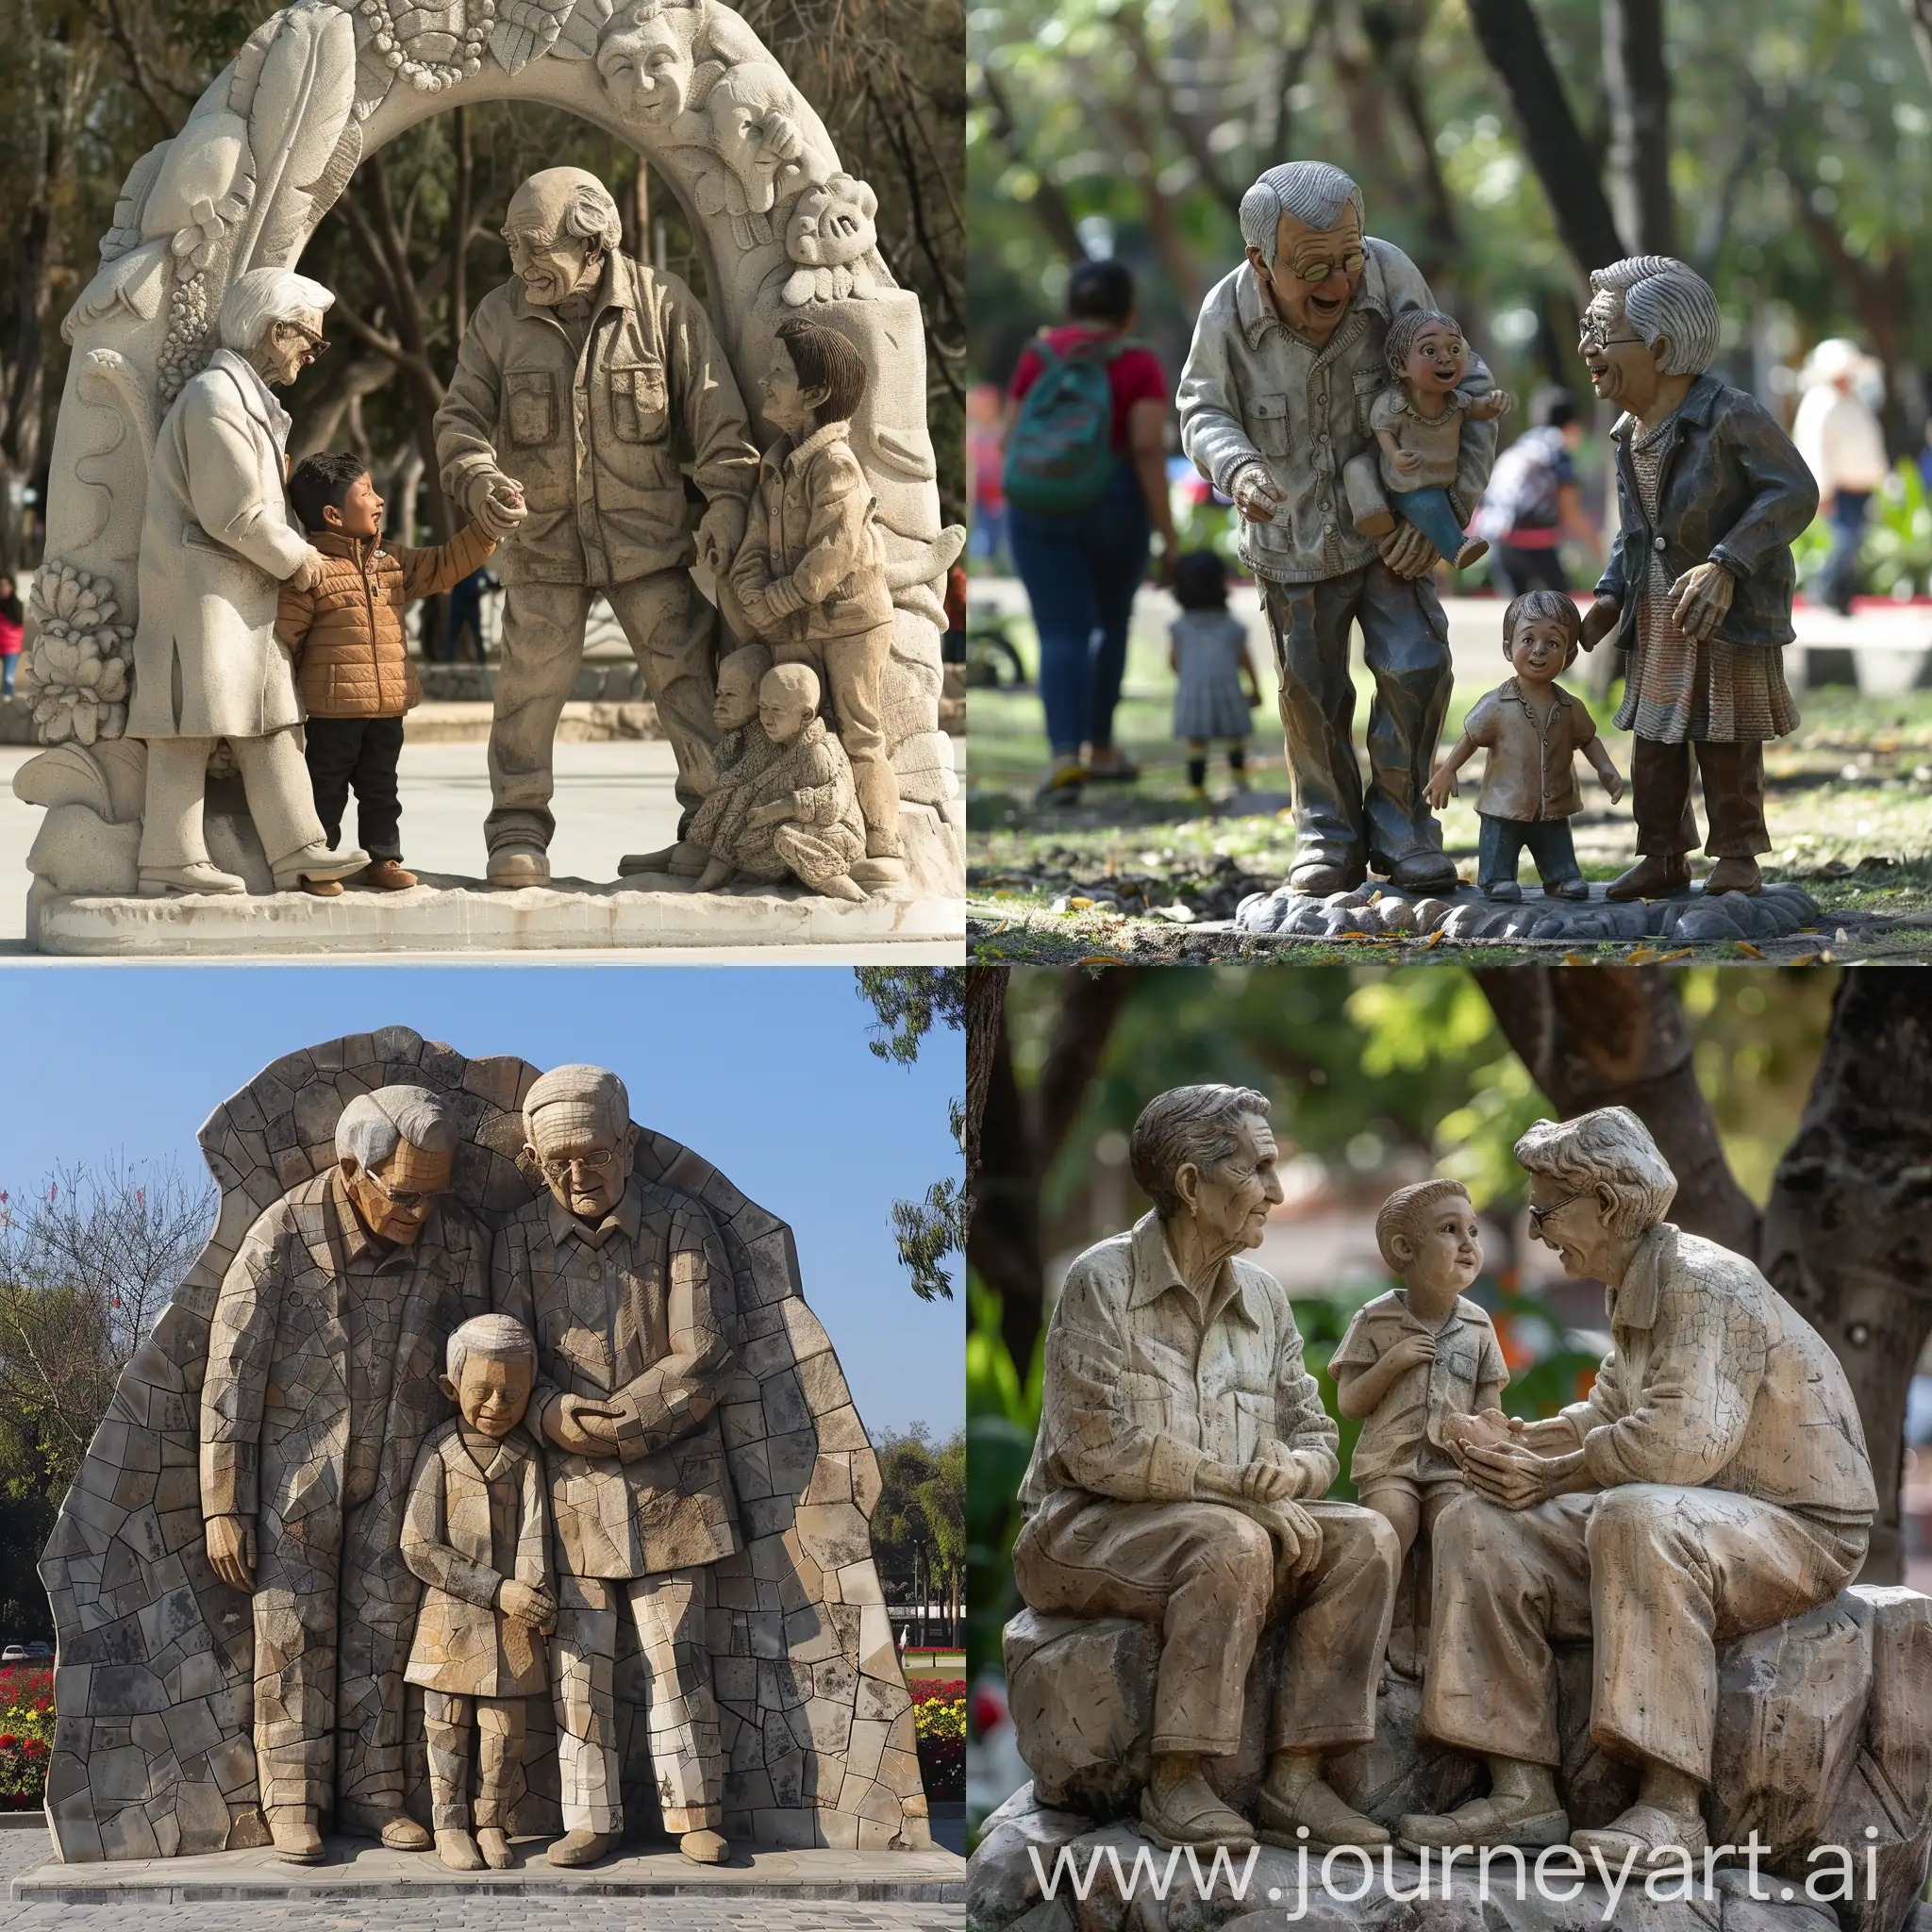 Generame una escultura ubicada en el parque arcos de zapopan segunda sección, donde la escultura haga referencia a la familia, como se relaciona l gente de la tercera edad con los niños que viven allá, colores neutros